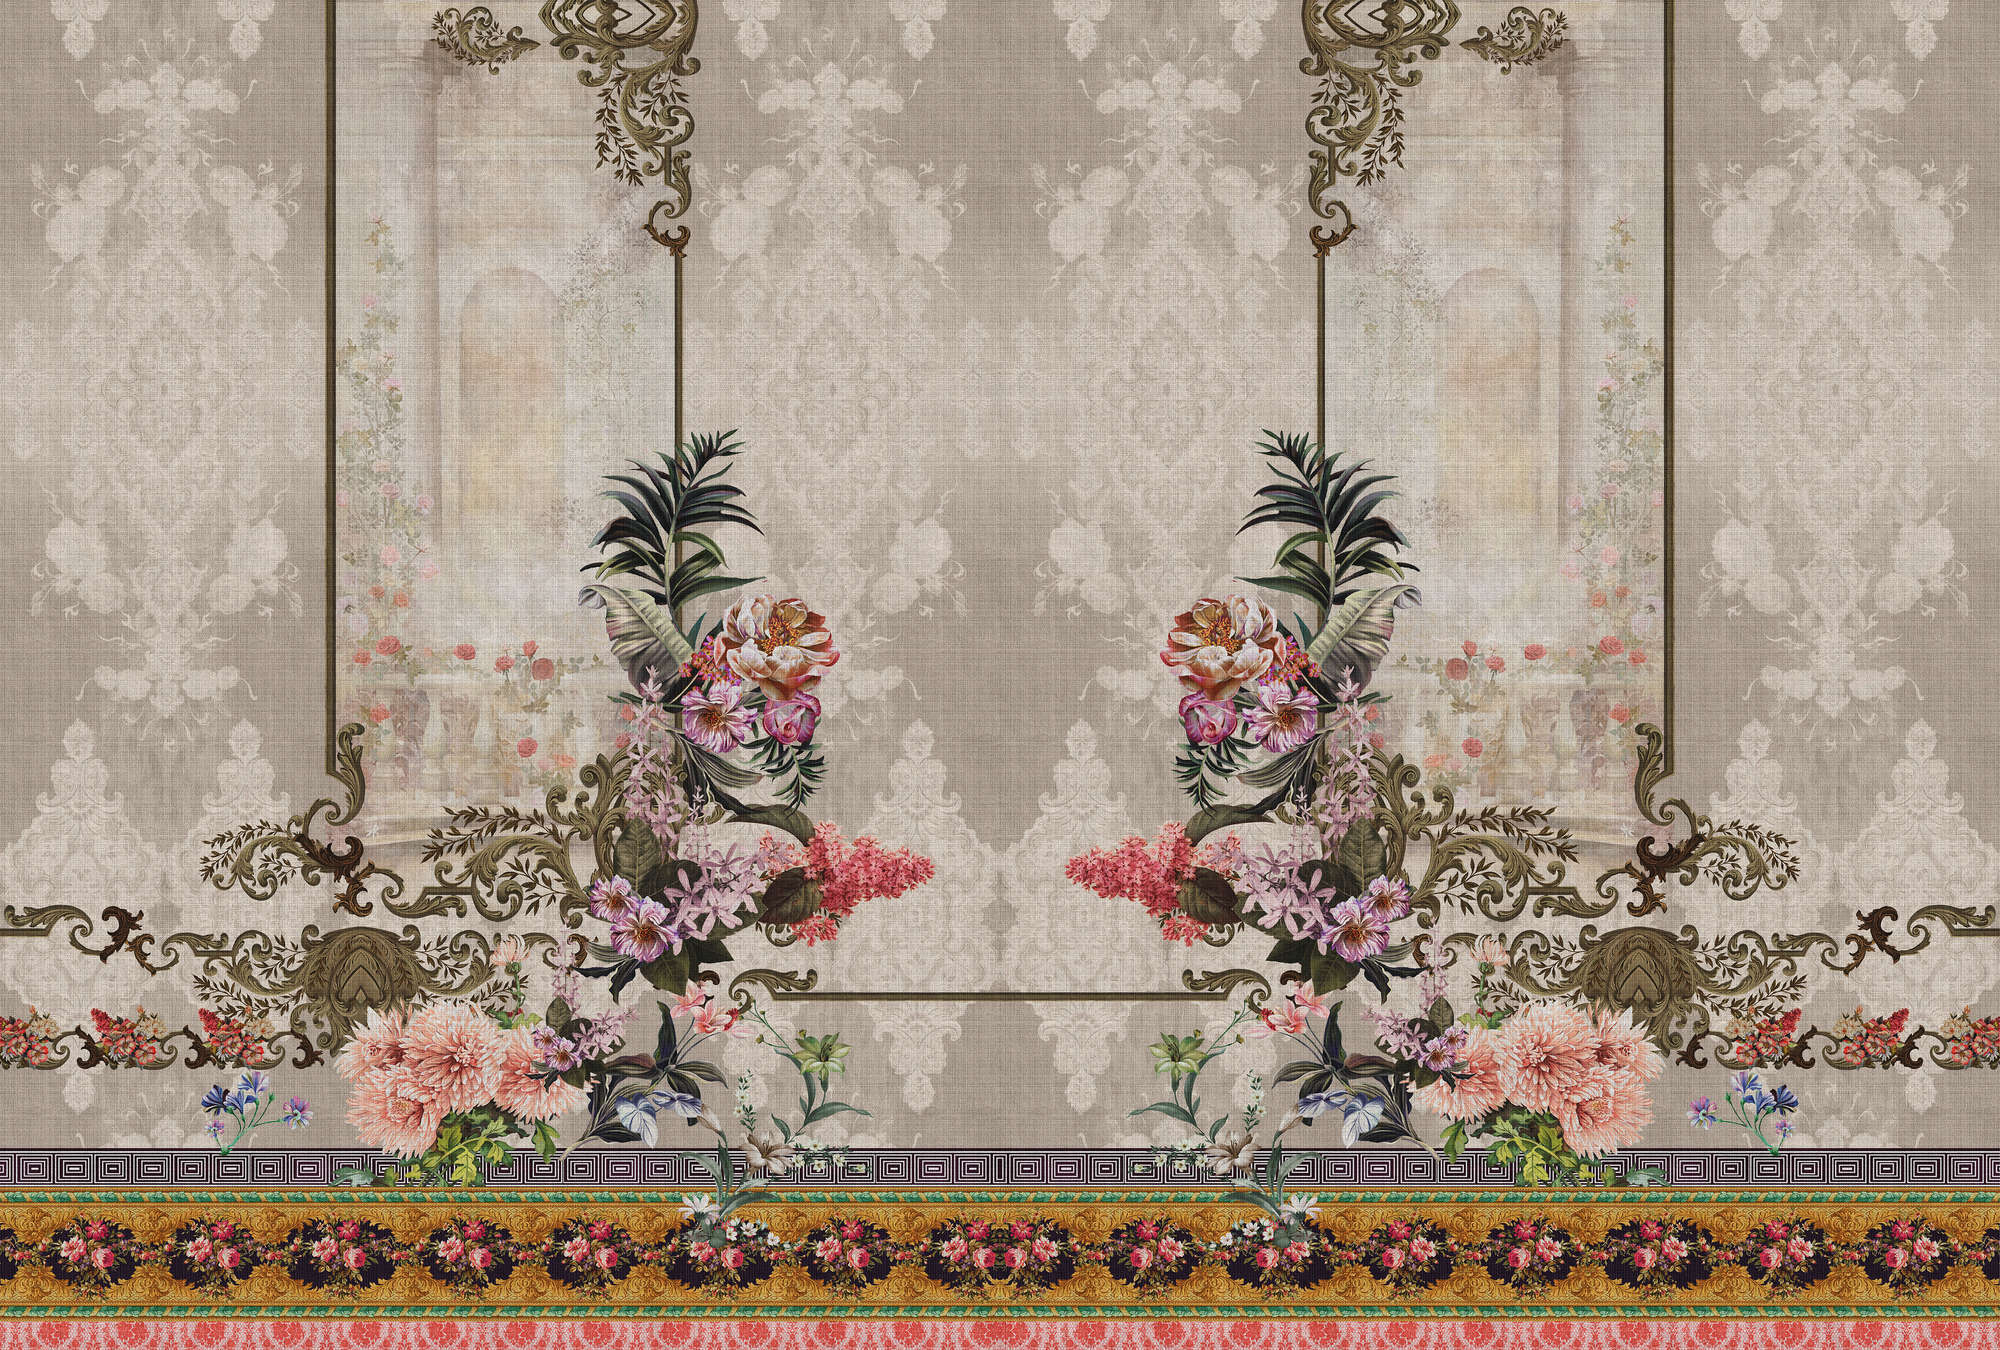             Oriental Garden 1 – Fototapete Wand Dekor Blumen & Borten
        